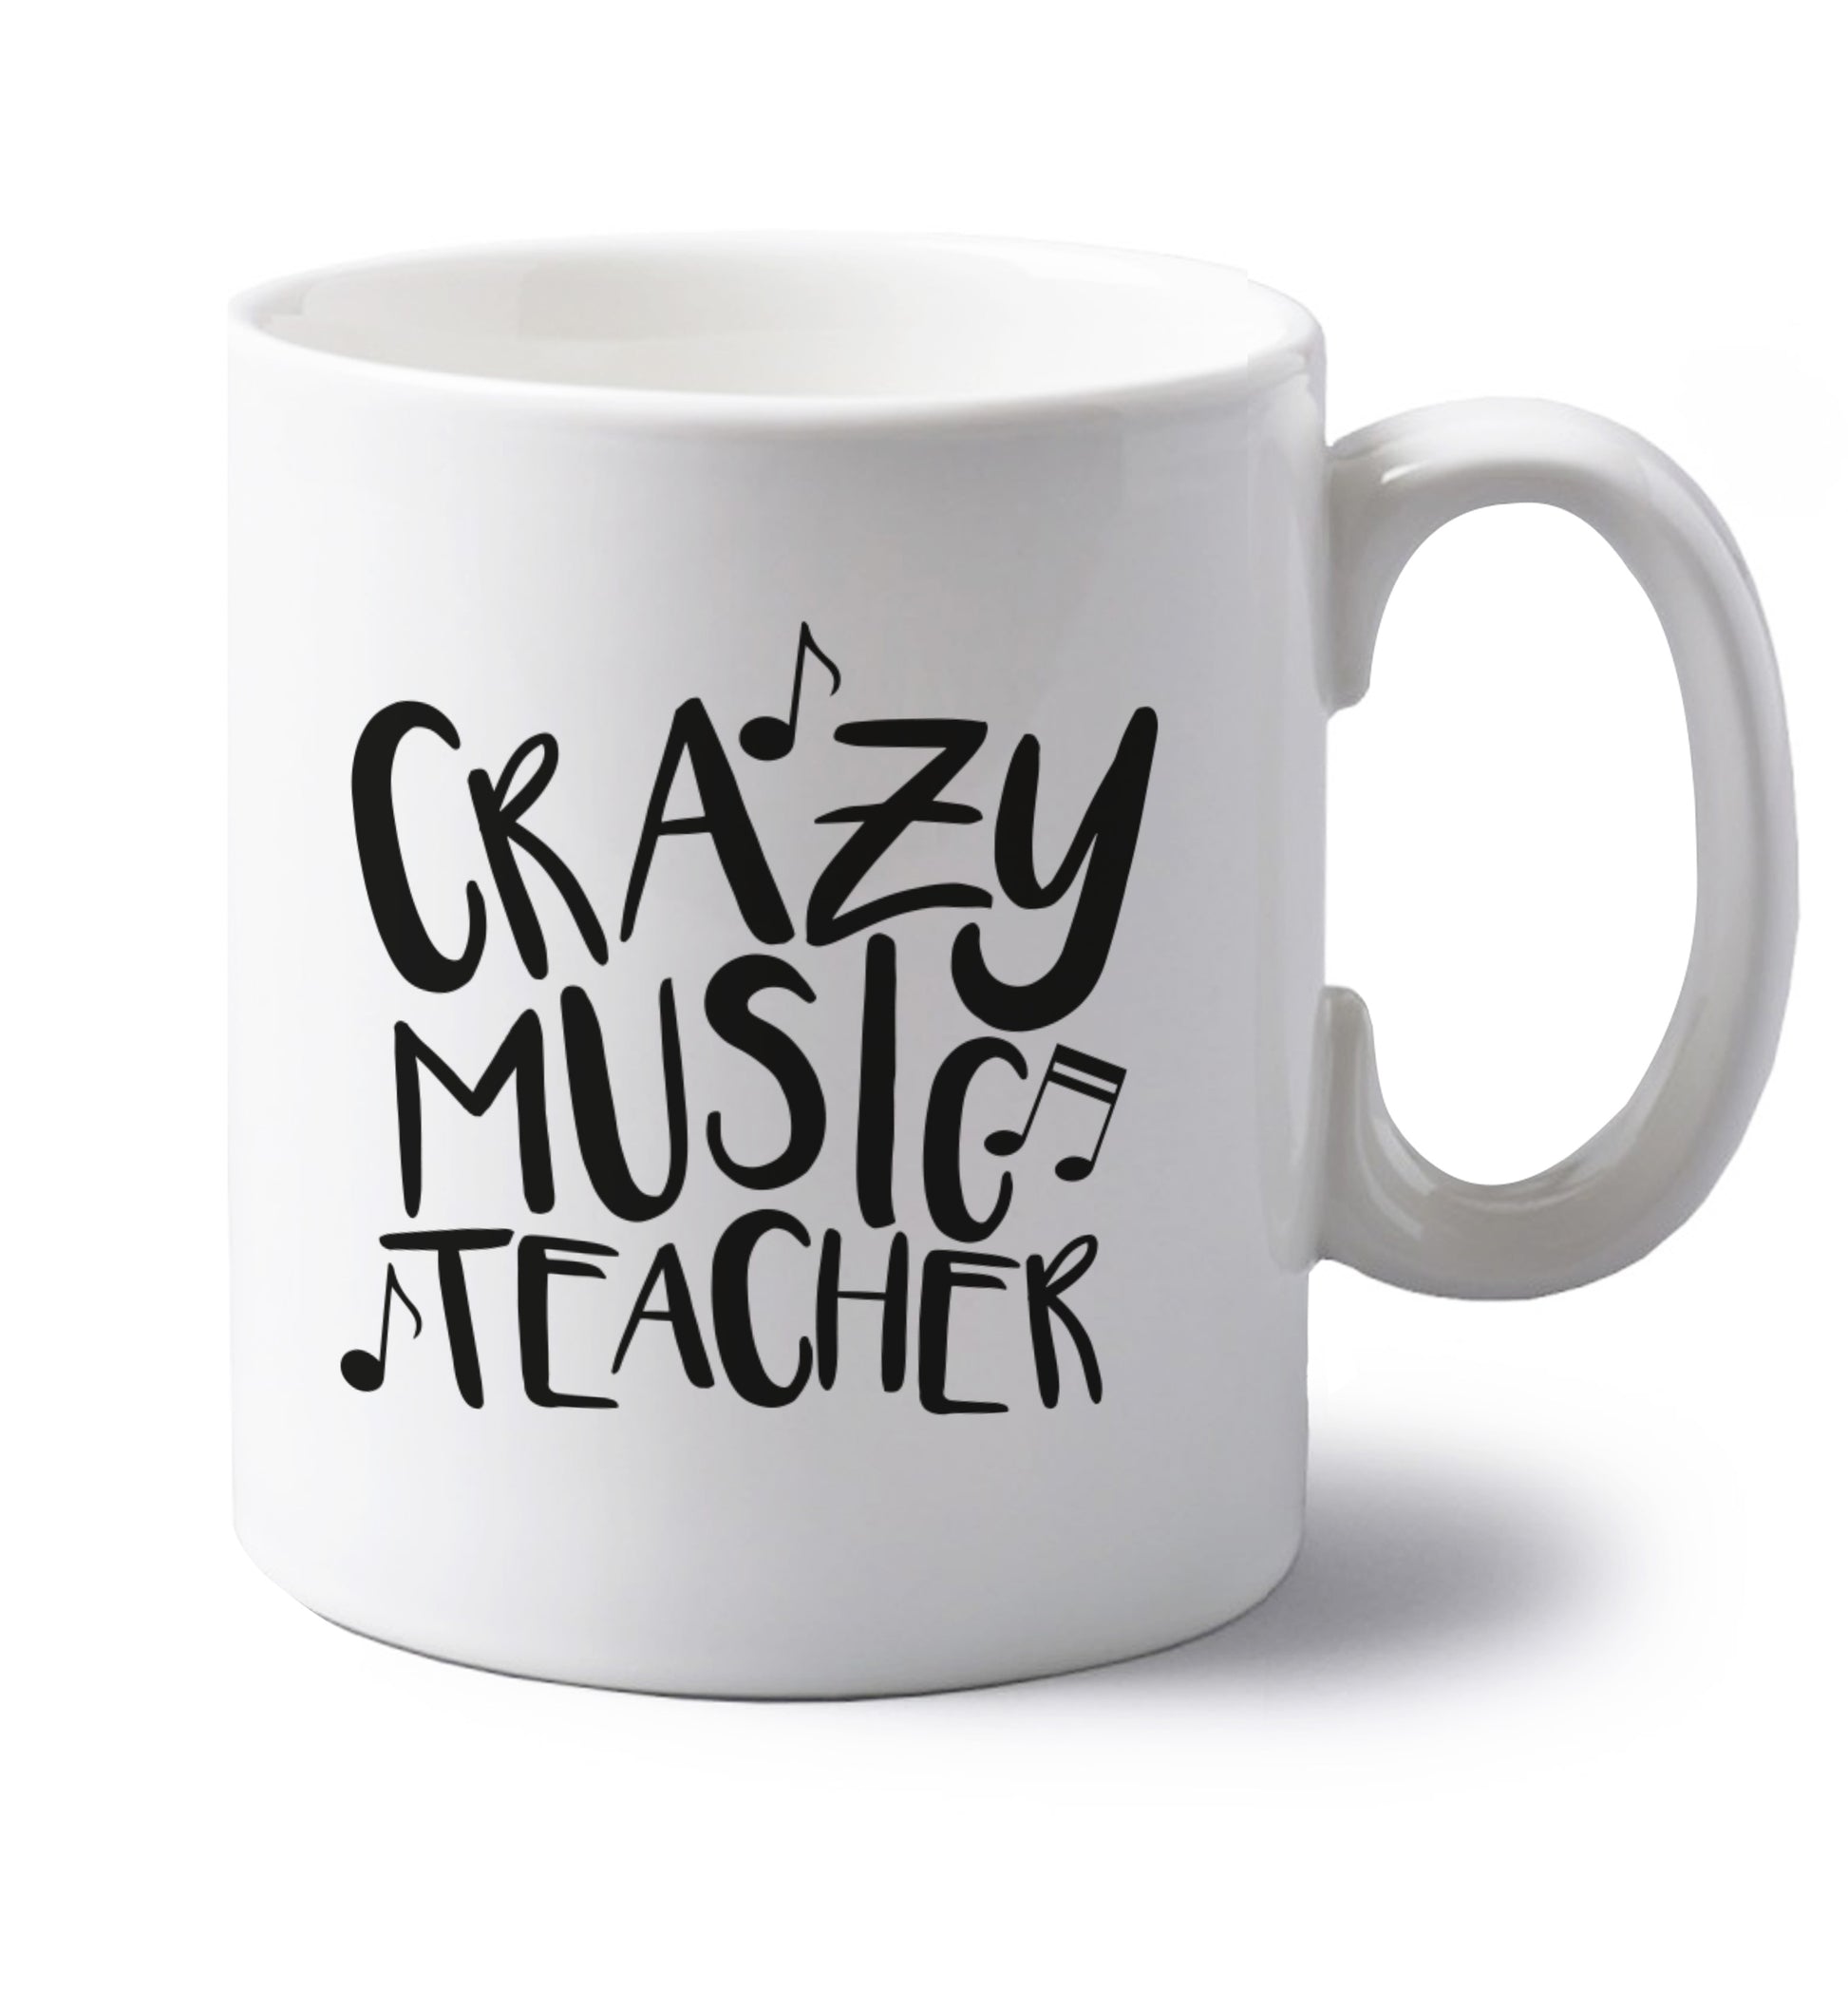 Crazy music teacher left handed white ceramic mug 